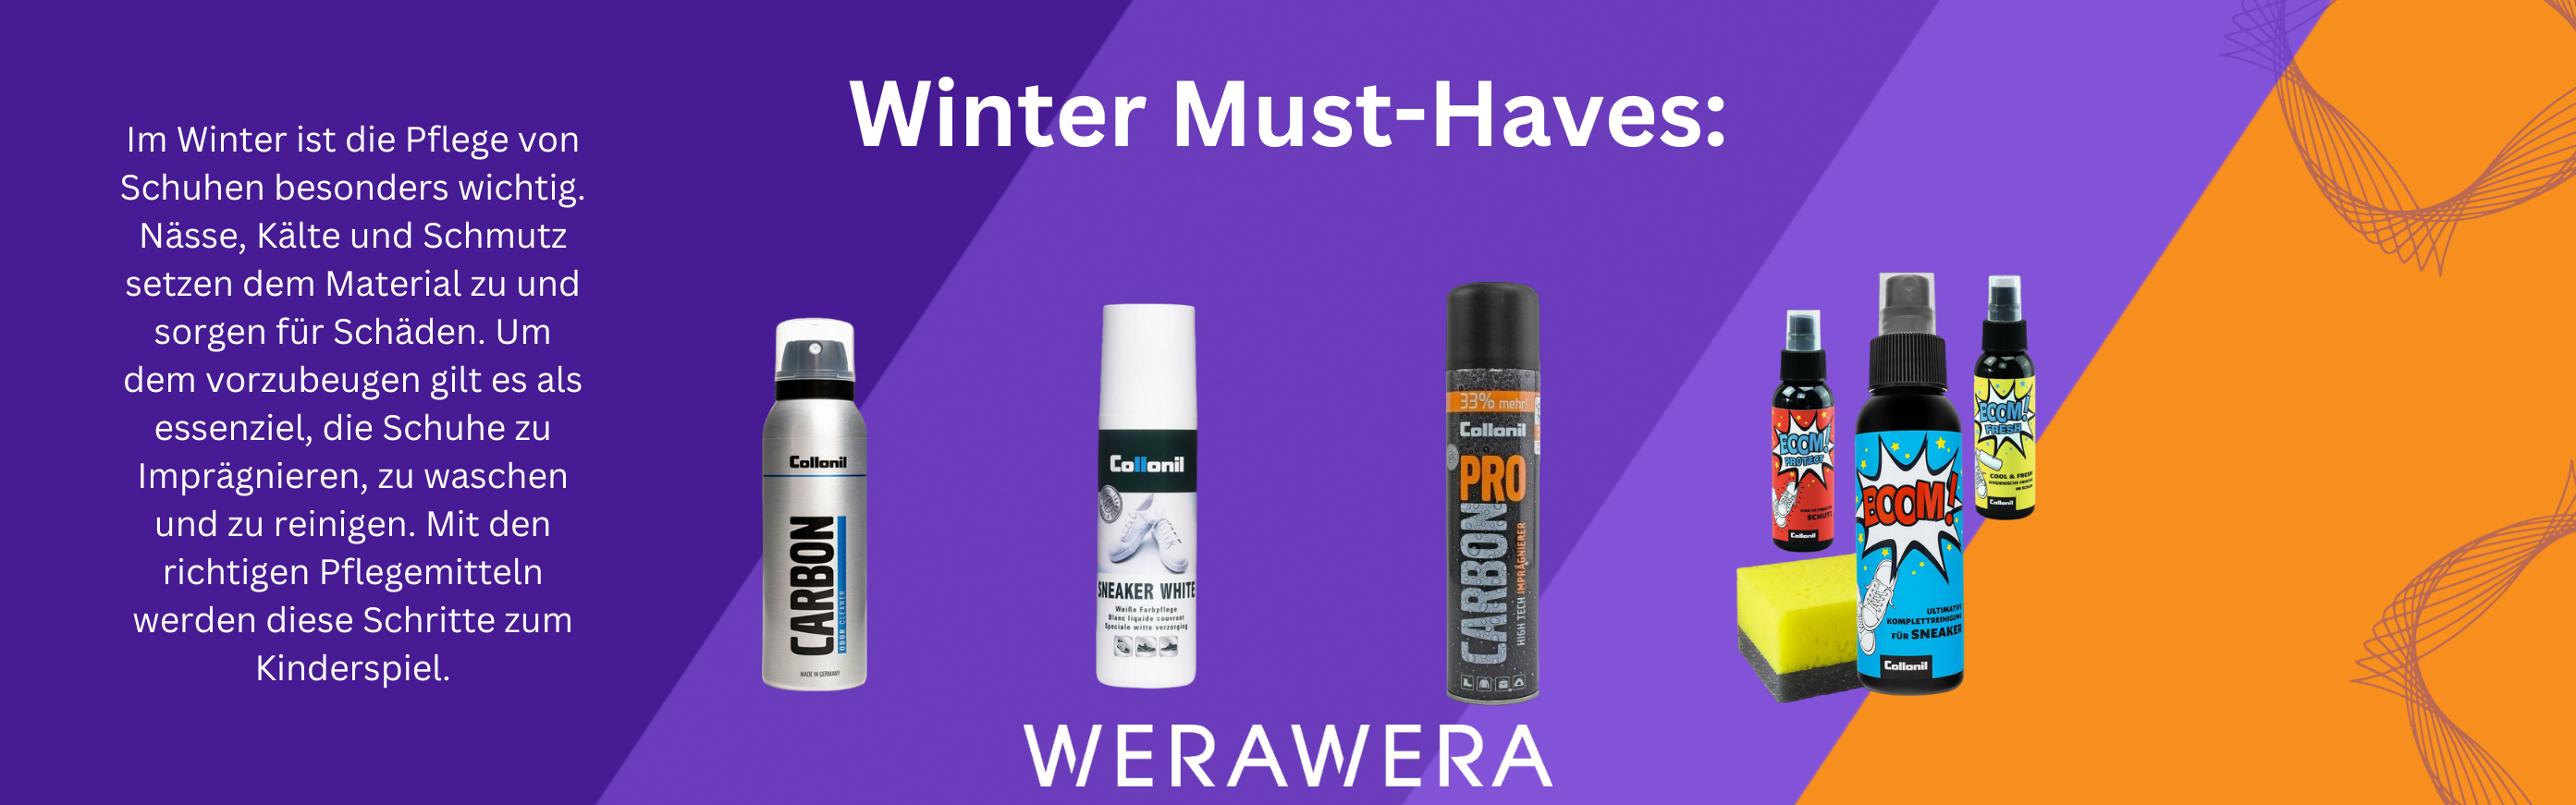 buntes banner werawera.com für schuhpflegeprodukte im winter mit kurzem text